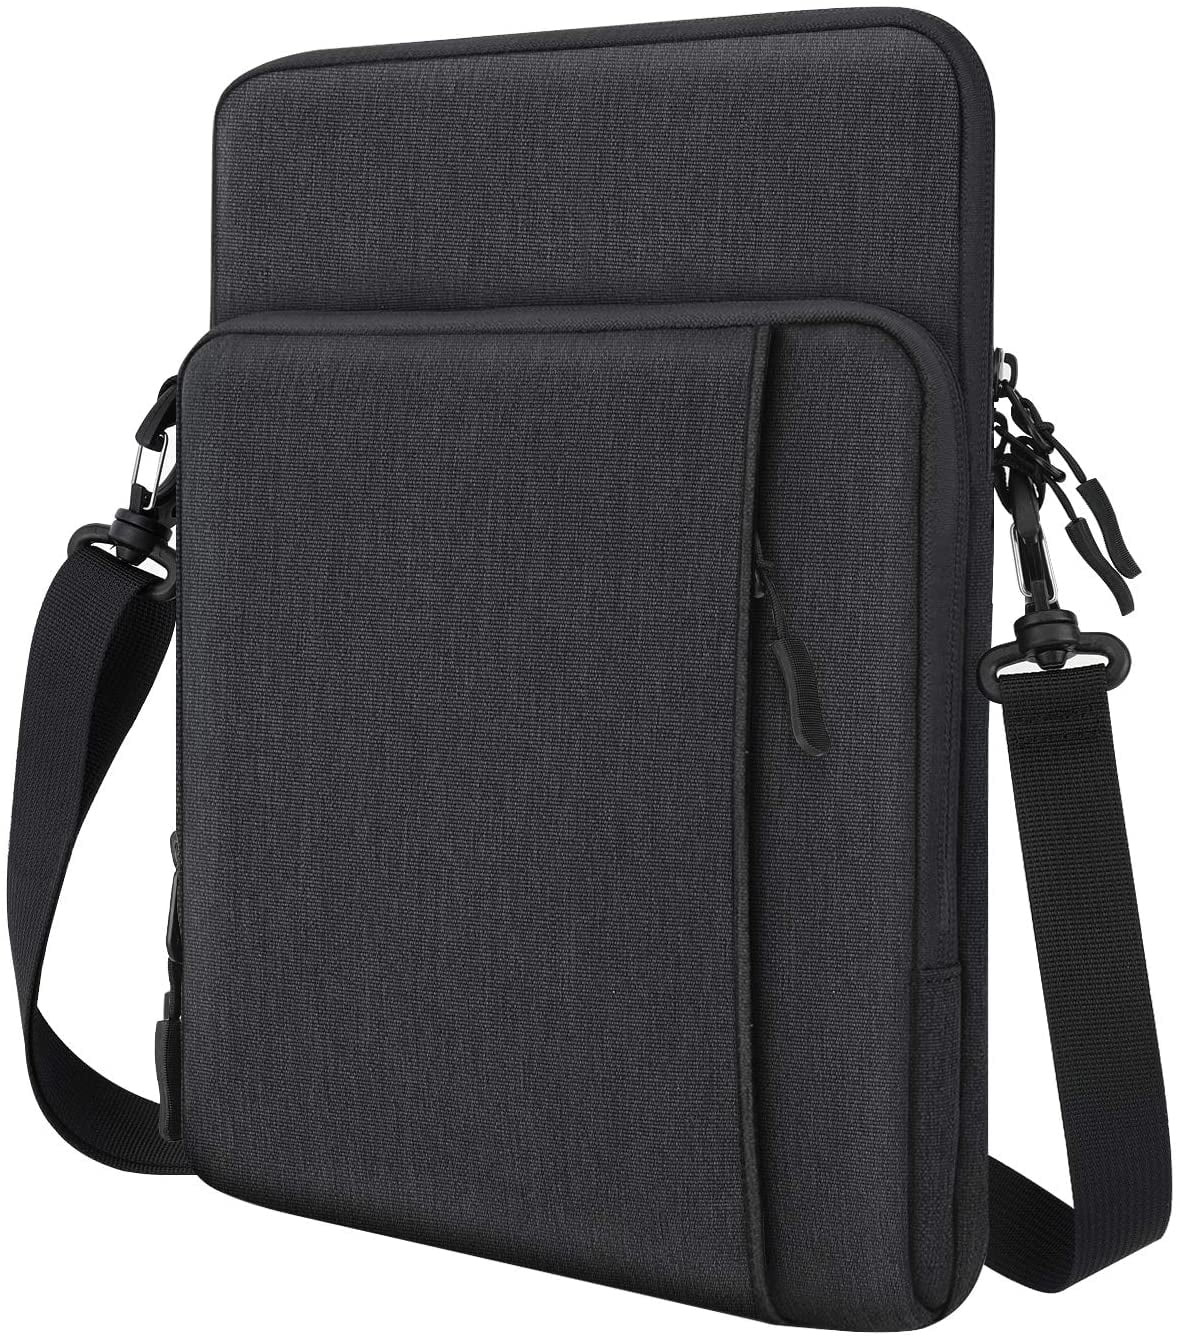 Avocado Laptop Case 13/15 Briefcase Handbag Carrying Sleeve Case Cover